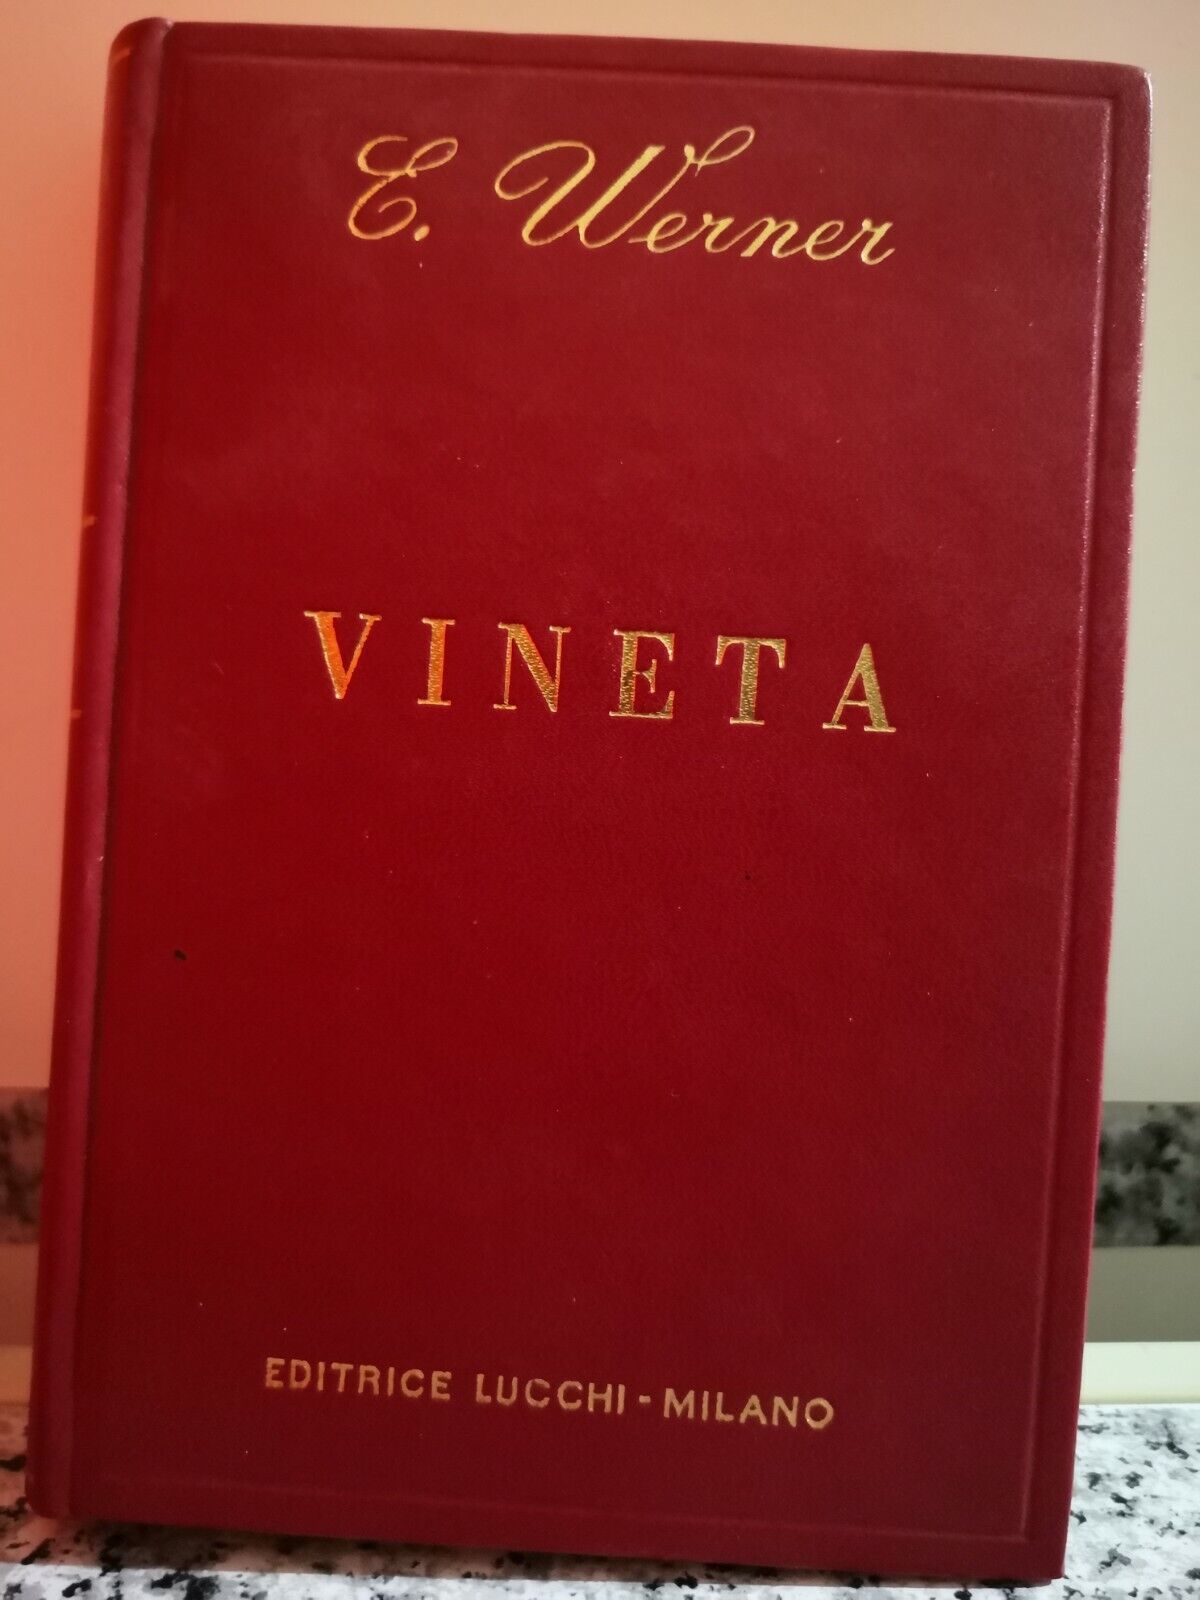 Vineta di E. Werner,  1967,  Editrice Lucchi -F